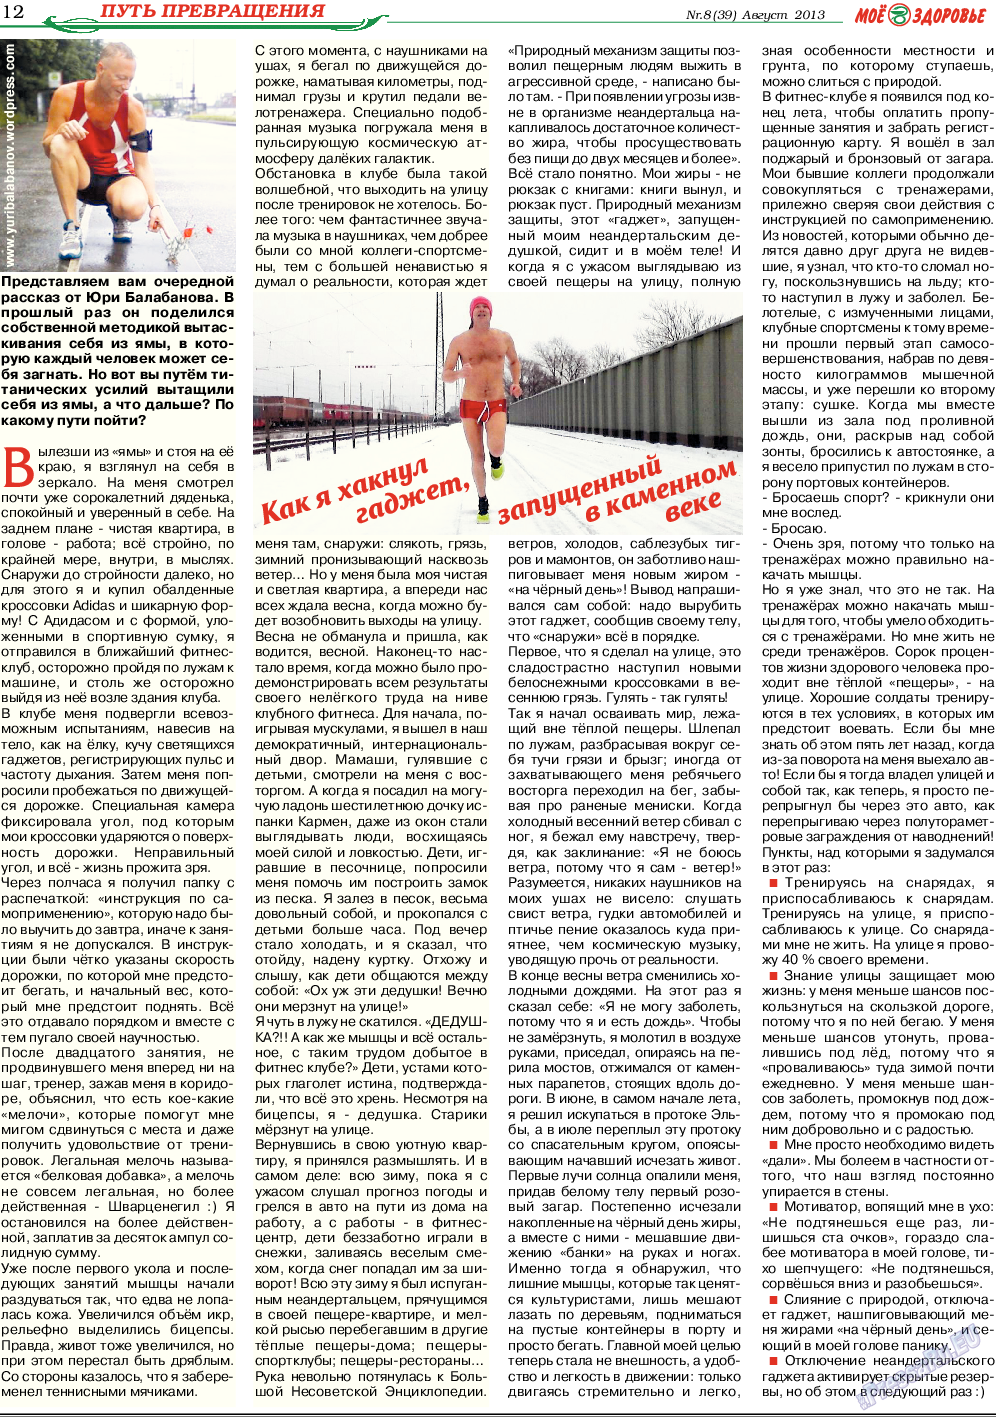 Кругозор (газета). 2013 год, номер 8, стр. 12